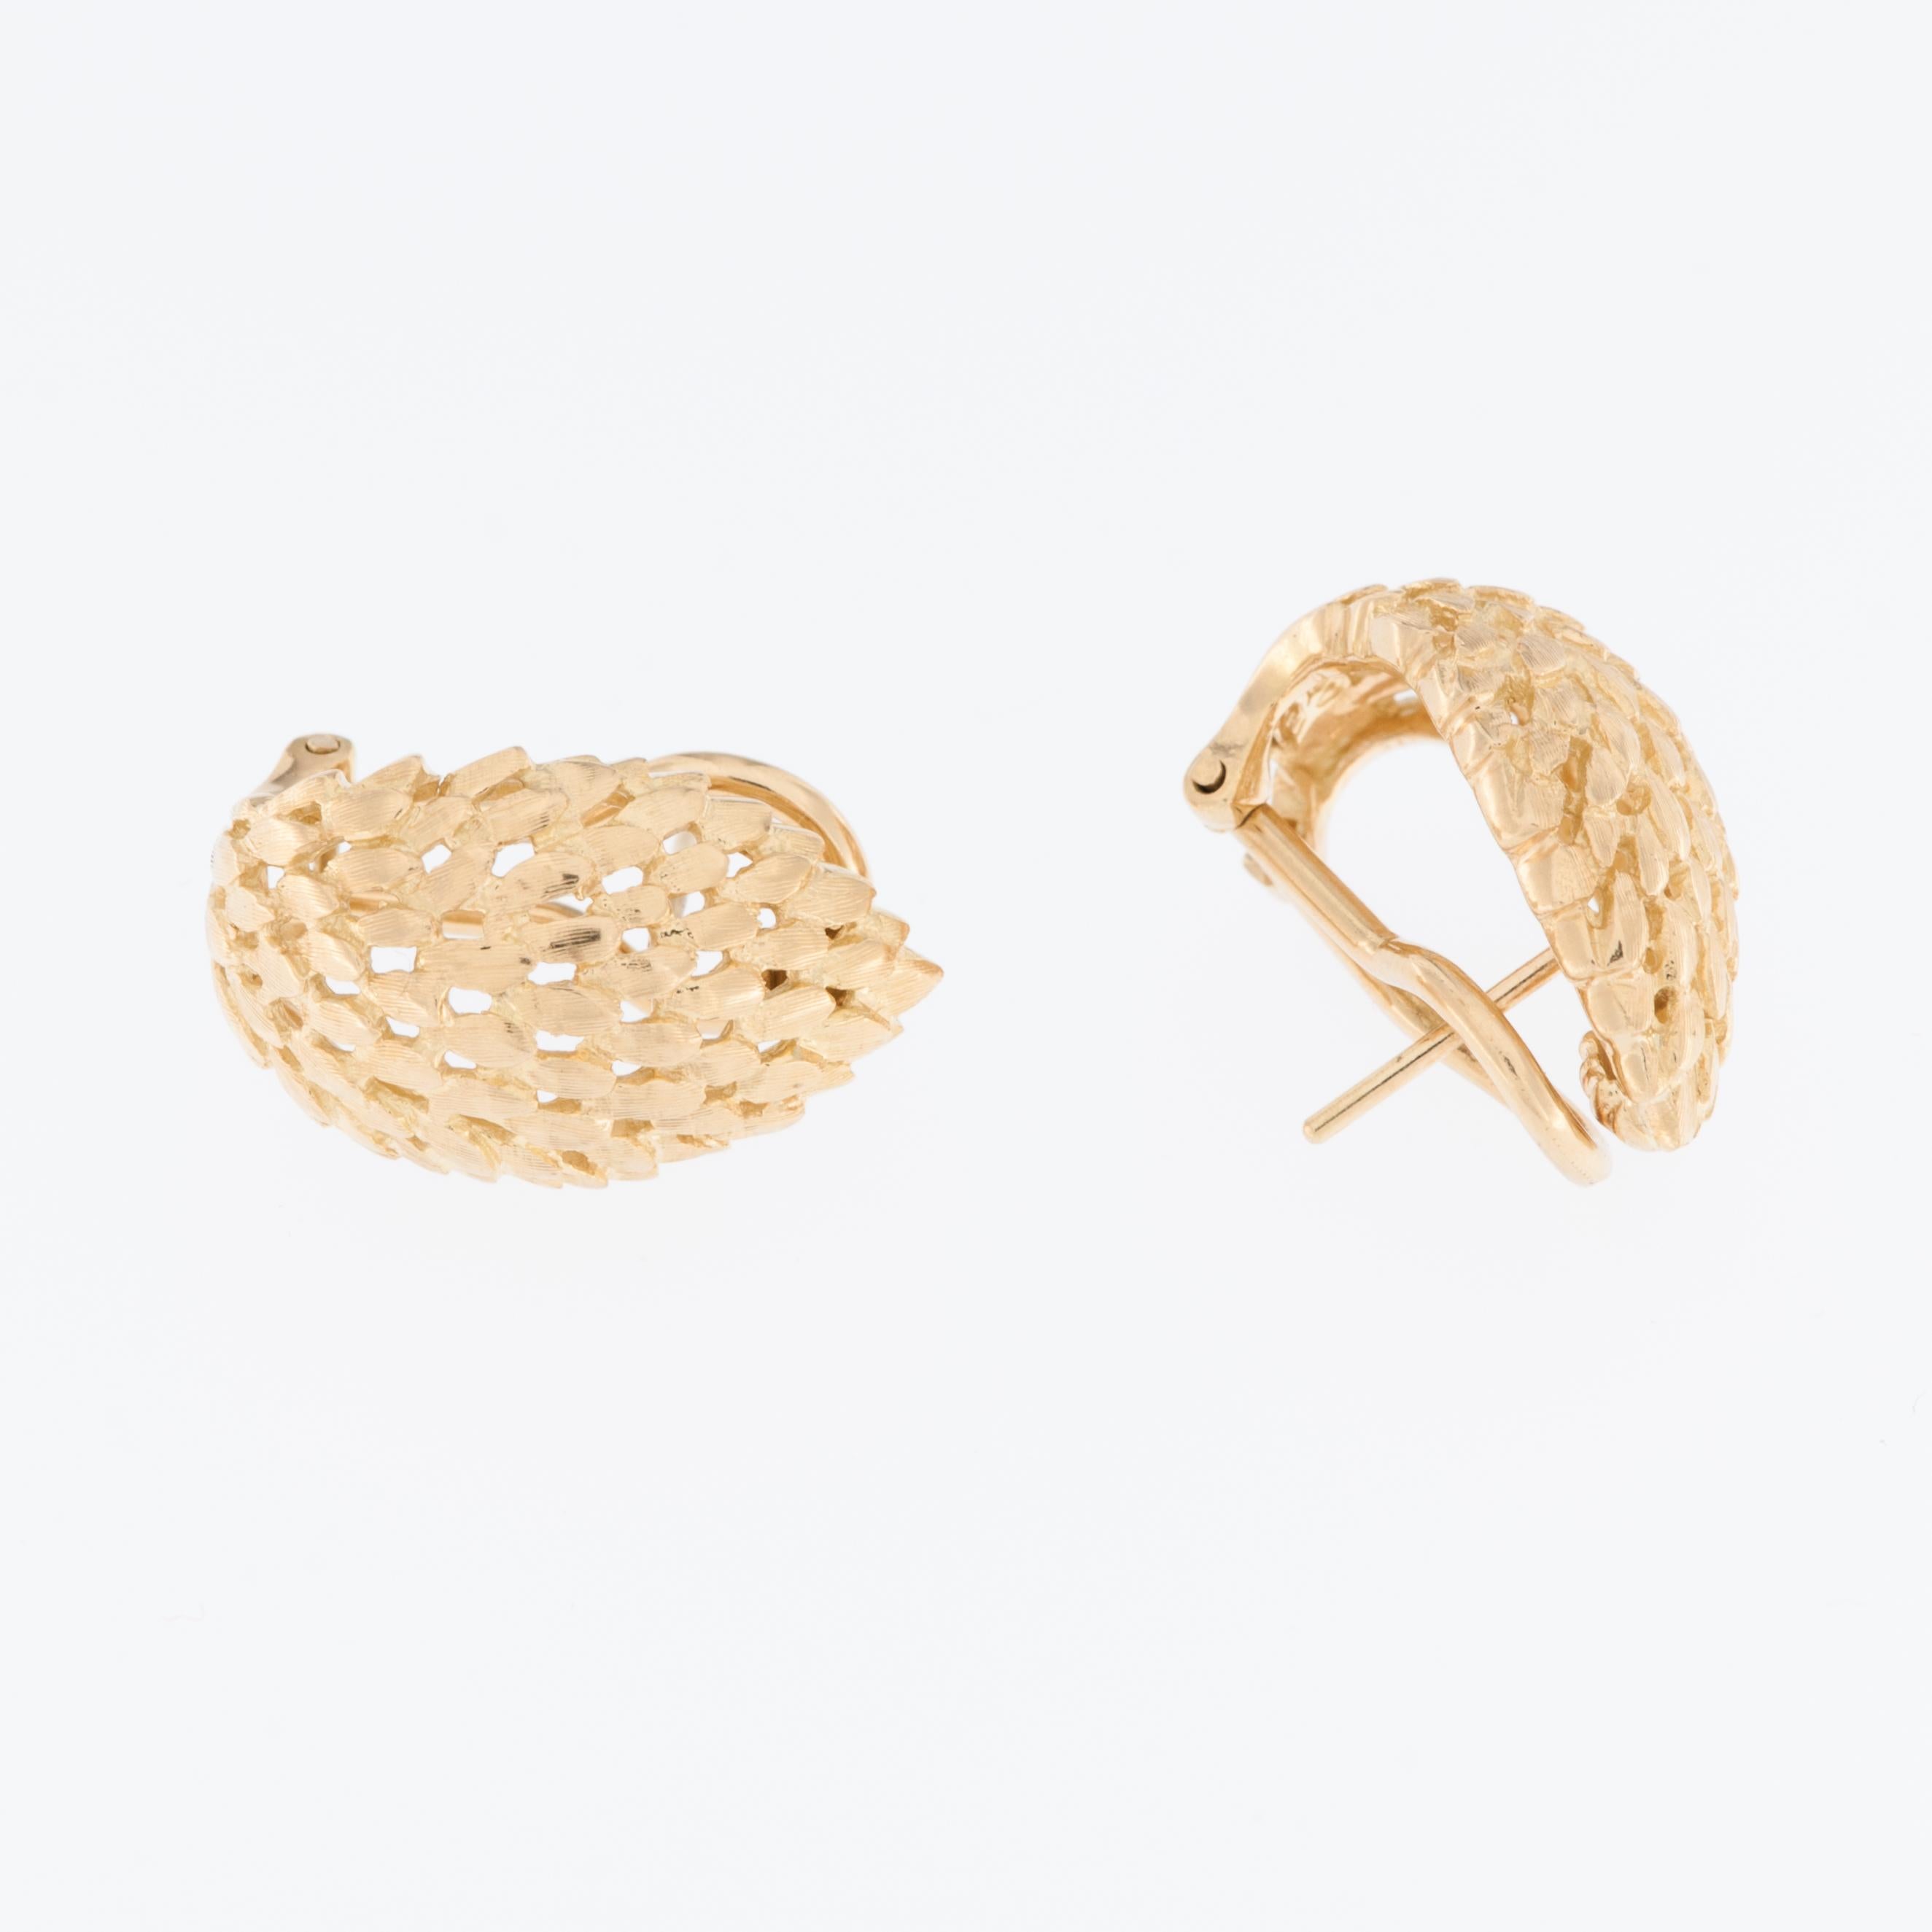 Ces boucles d'oreilles italiennes en or jaune 18kt en forme de plume sont des bijoux exquis qui respirent l'élégance et le style. Ils sont fabriqués en or jaune 18 carats de haute qualité. Ce matériau est connu pour sa durabilité, son aspect luxueux